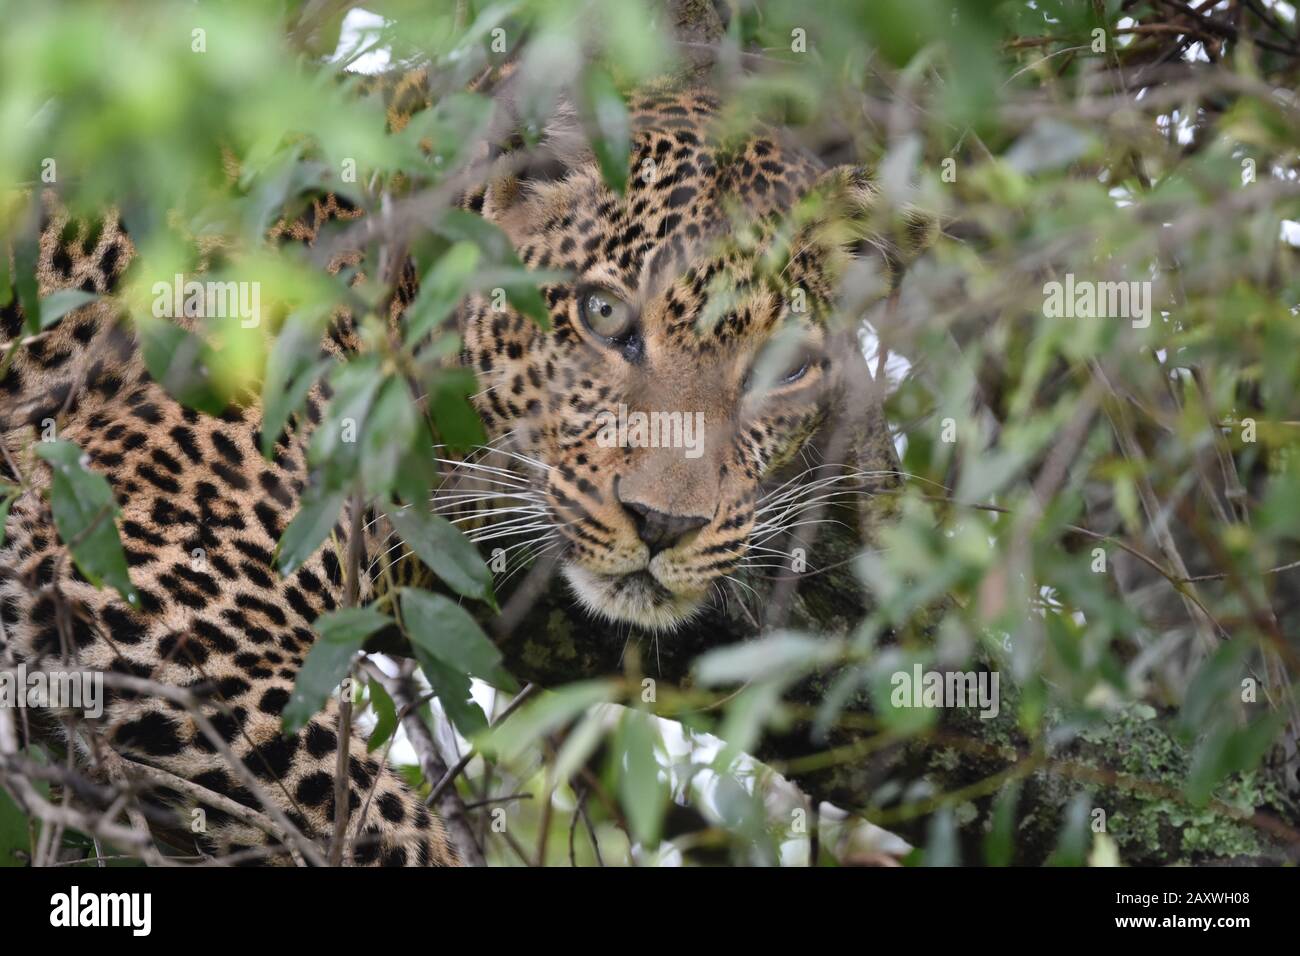 Leopard hiding in dense tree foliage. Masai Mara National Park, Kenya. Stock Photo